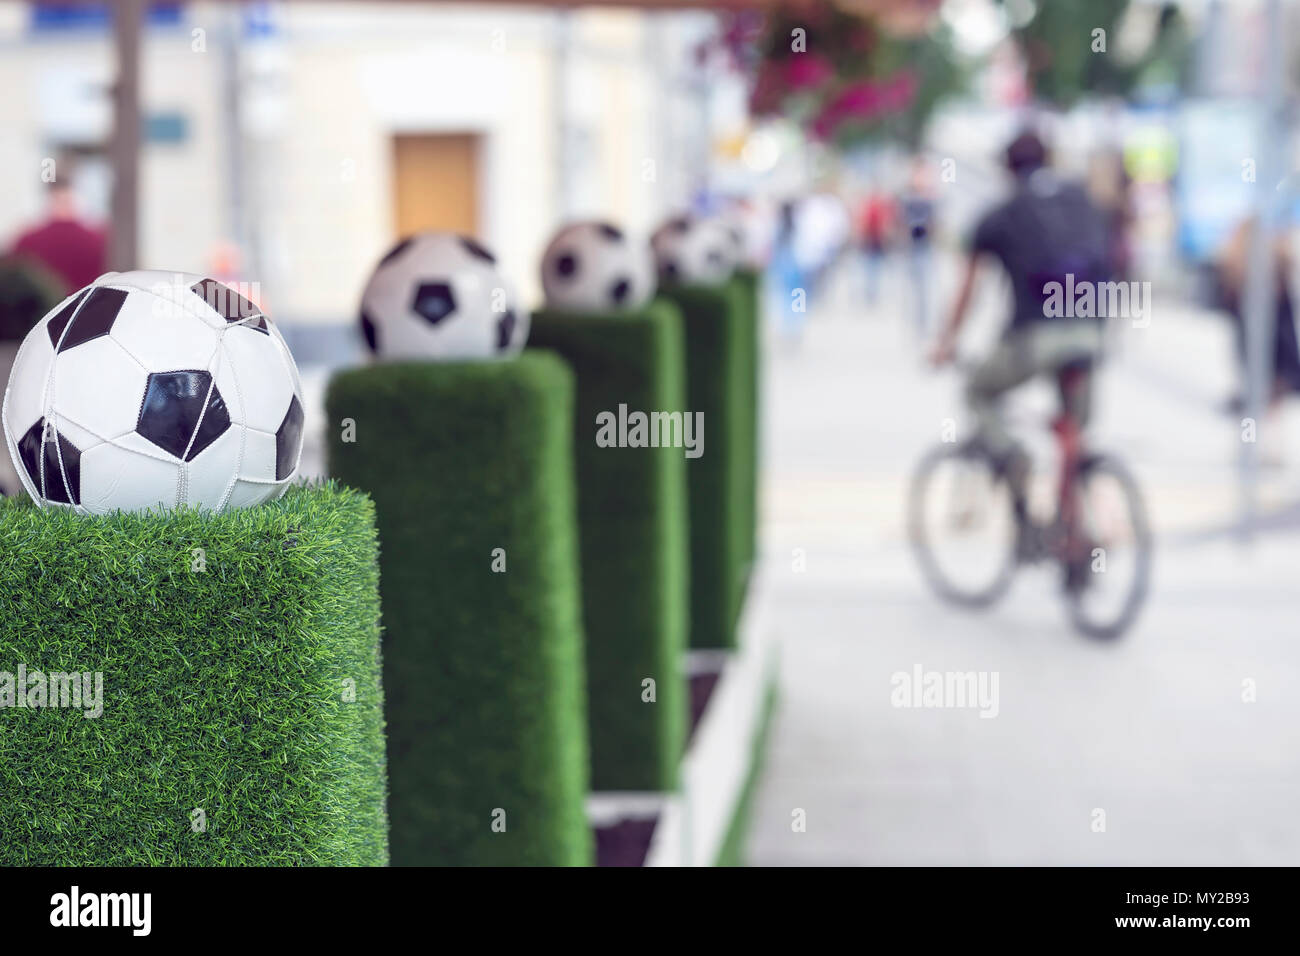 Stands de décoration avec ballon de foot dans le filet sur l'herbe verte. Ornements des rues de la ville. Les personnes floues, l'homme sur un vélo. Selective focus Banque D'Images